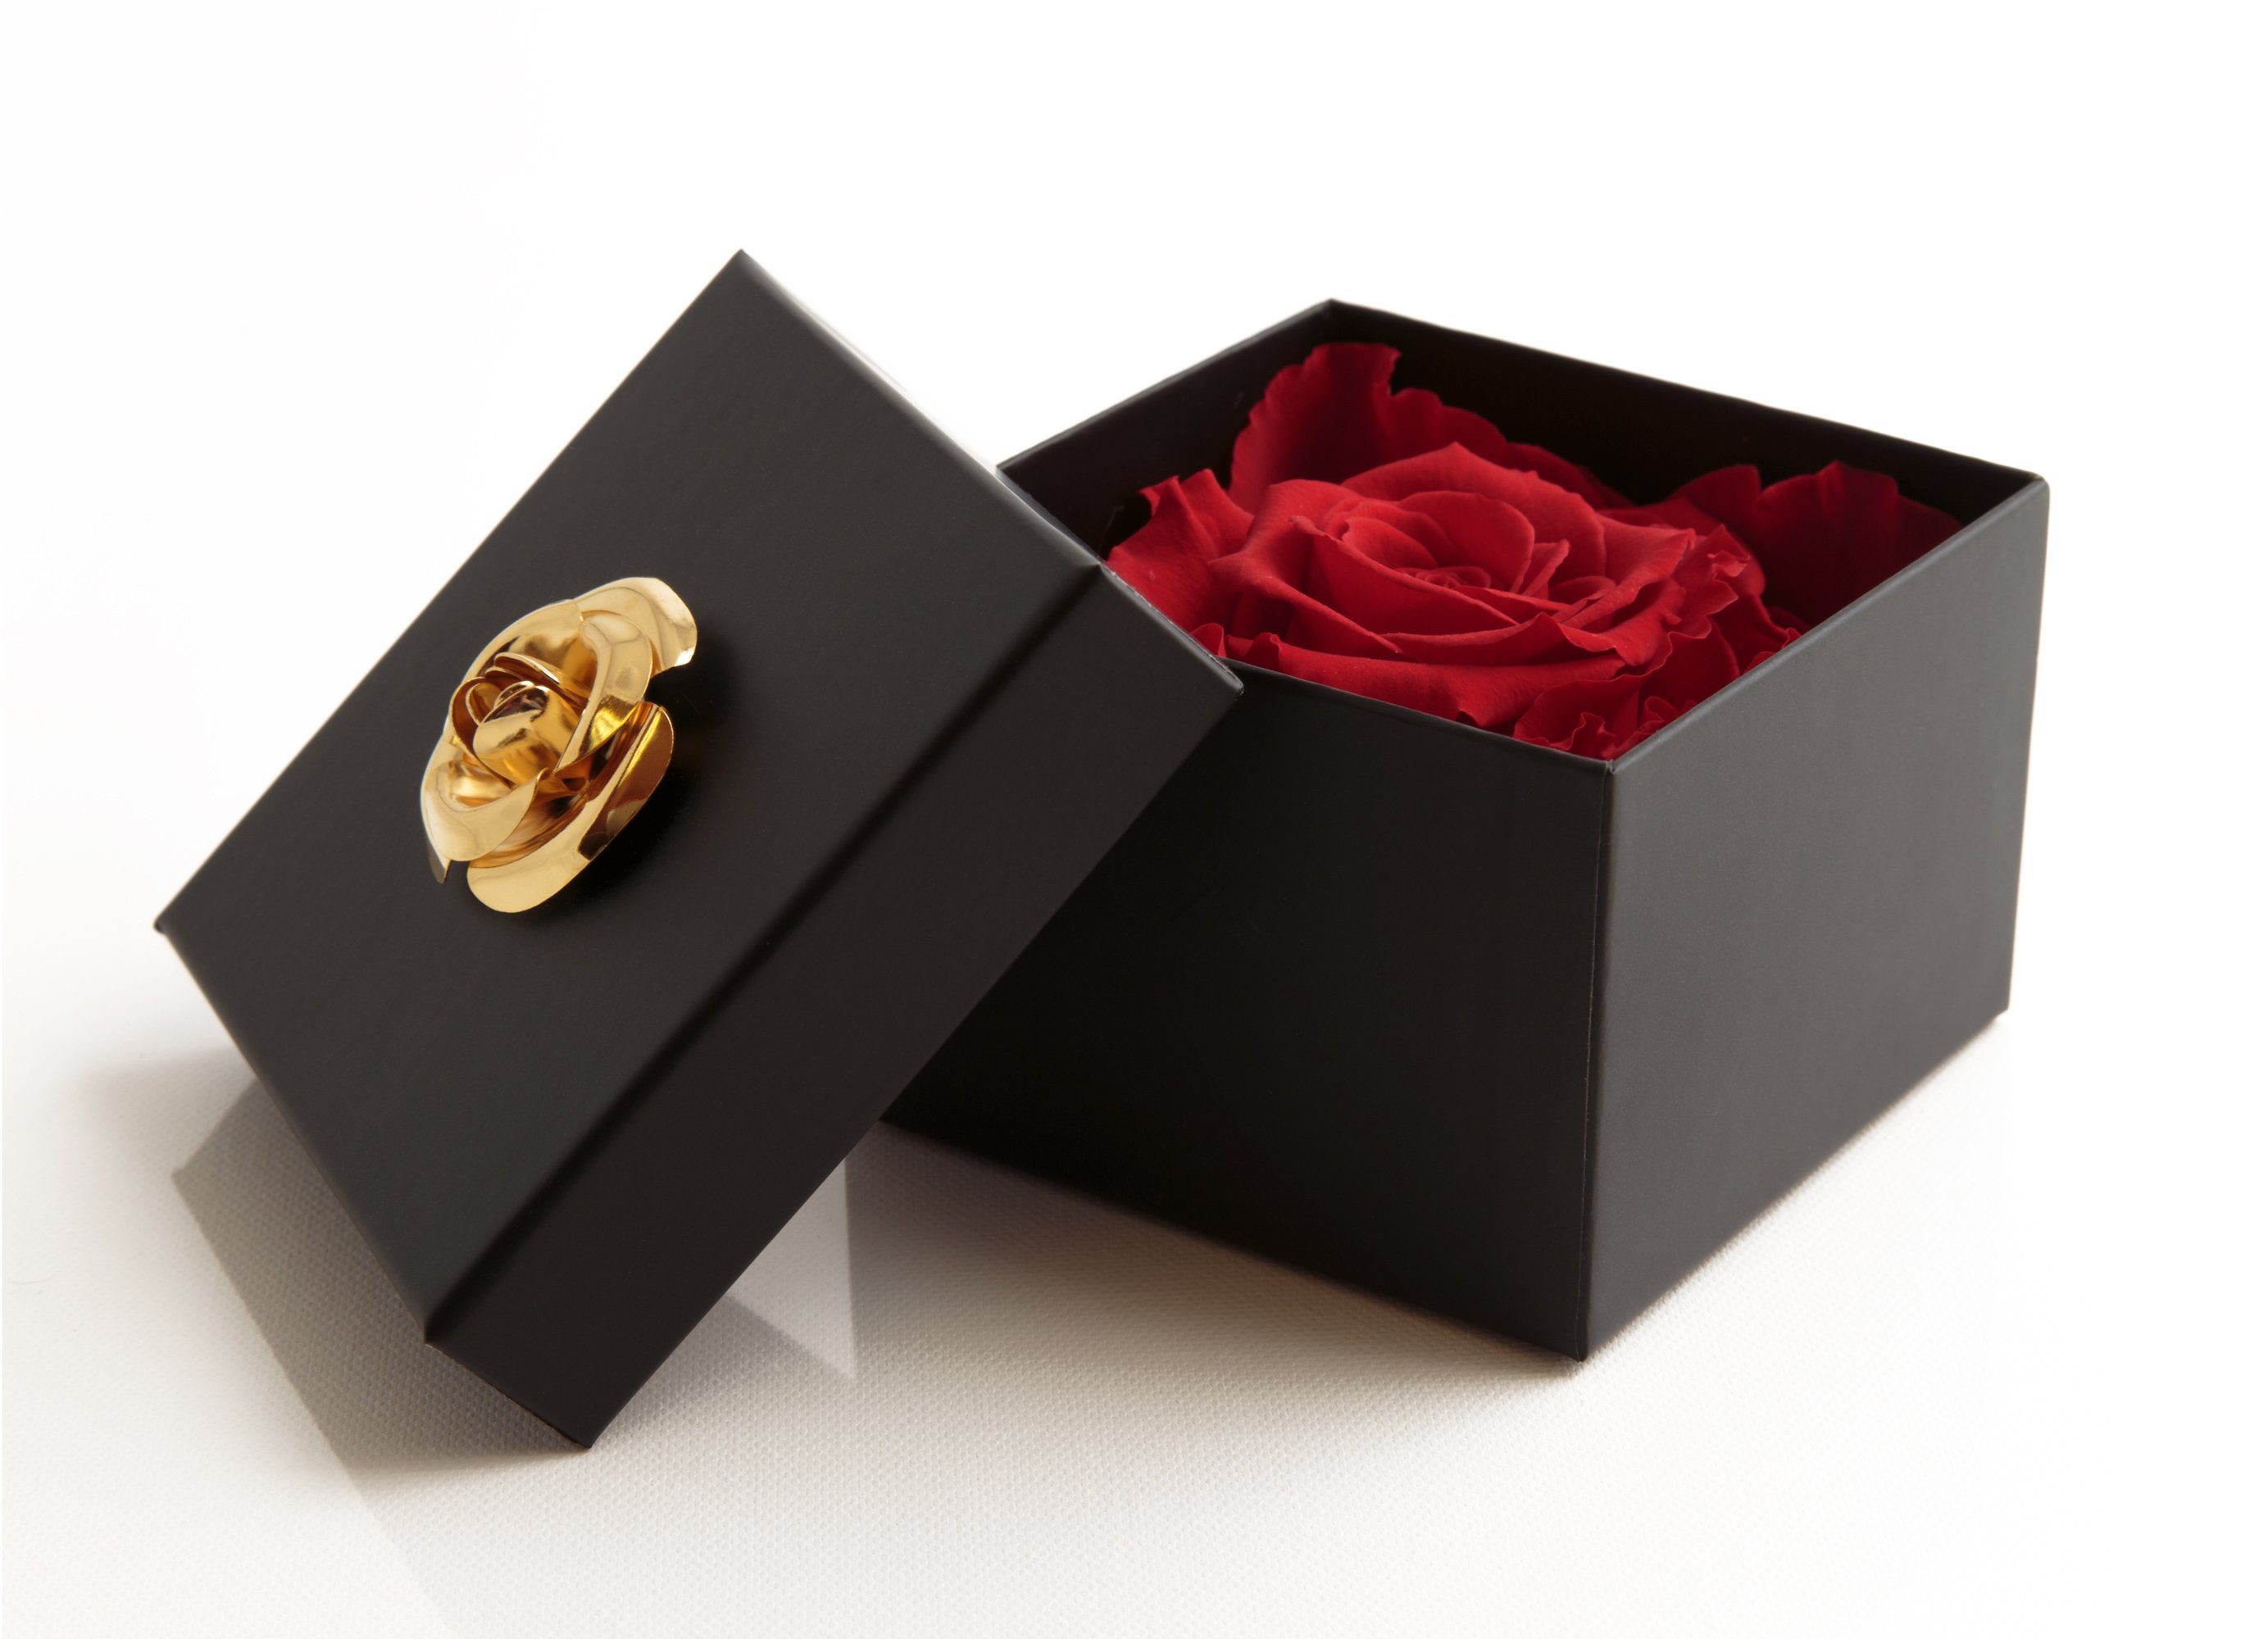 SCHULZ mit Heidelberg, Echte Blumendeckel ROSEMARIE Kunstblume haltbar zu Jahre Rose, 1 cm, 3 Infinity 3 6.5 Höhe Rose Box Rose haltbar rot in bis Rose Jahre